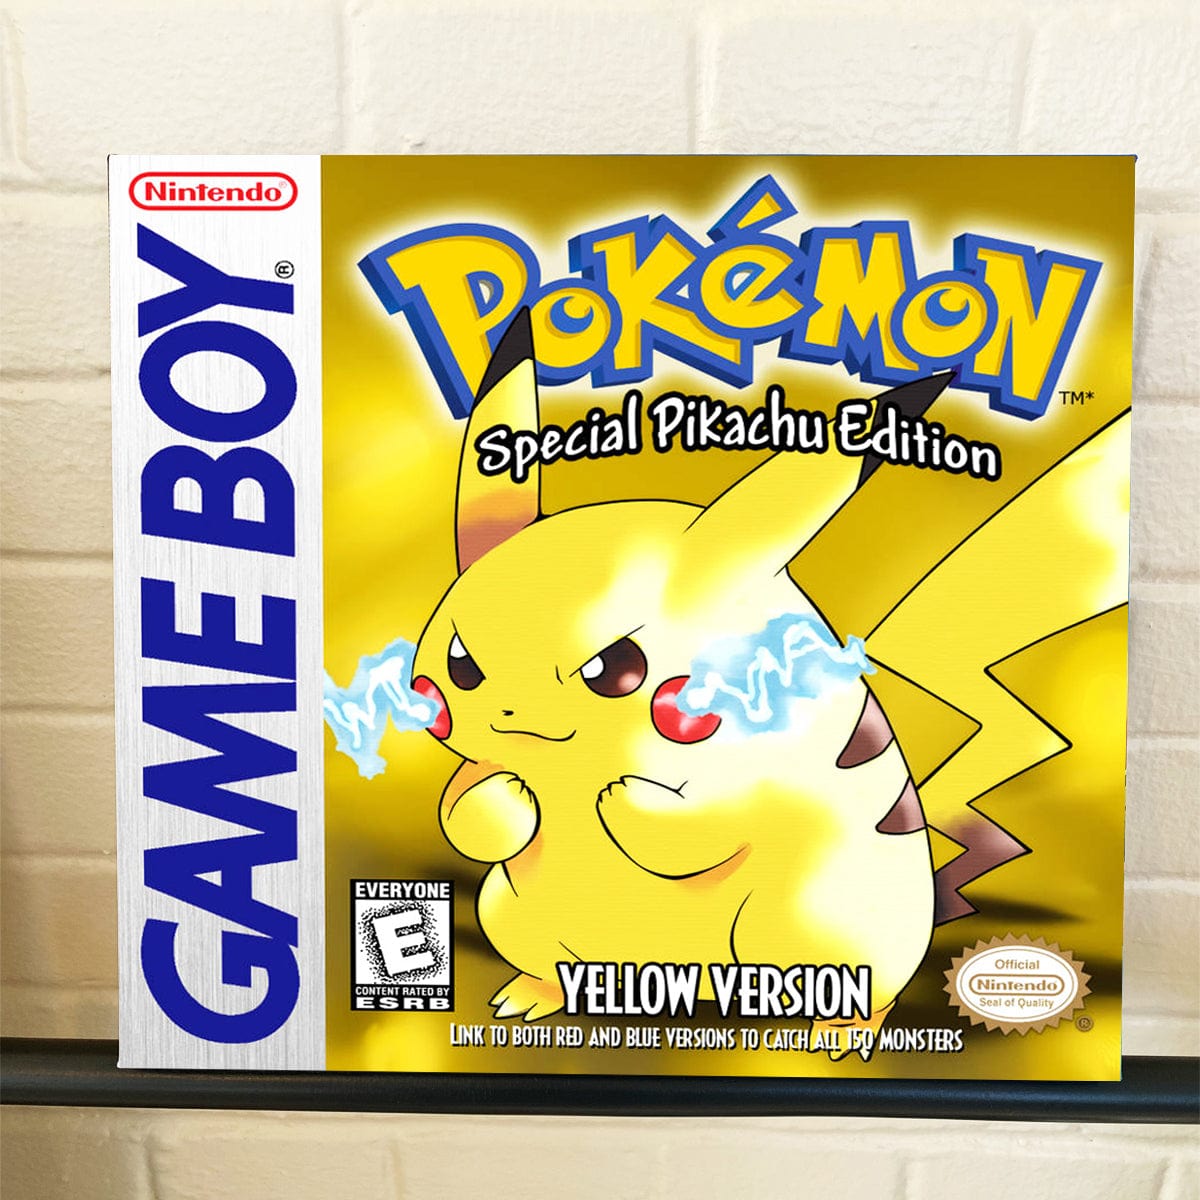 Pokemon Yellow Box Art Remake by TomDoy on Newgrounds